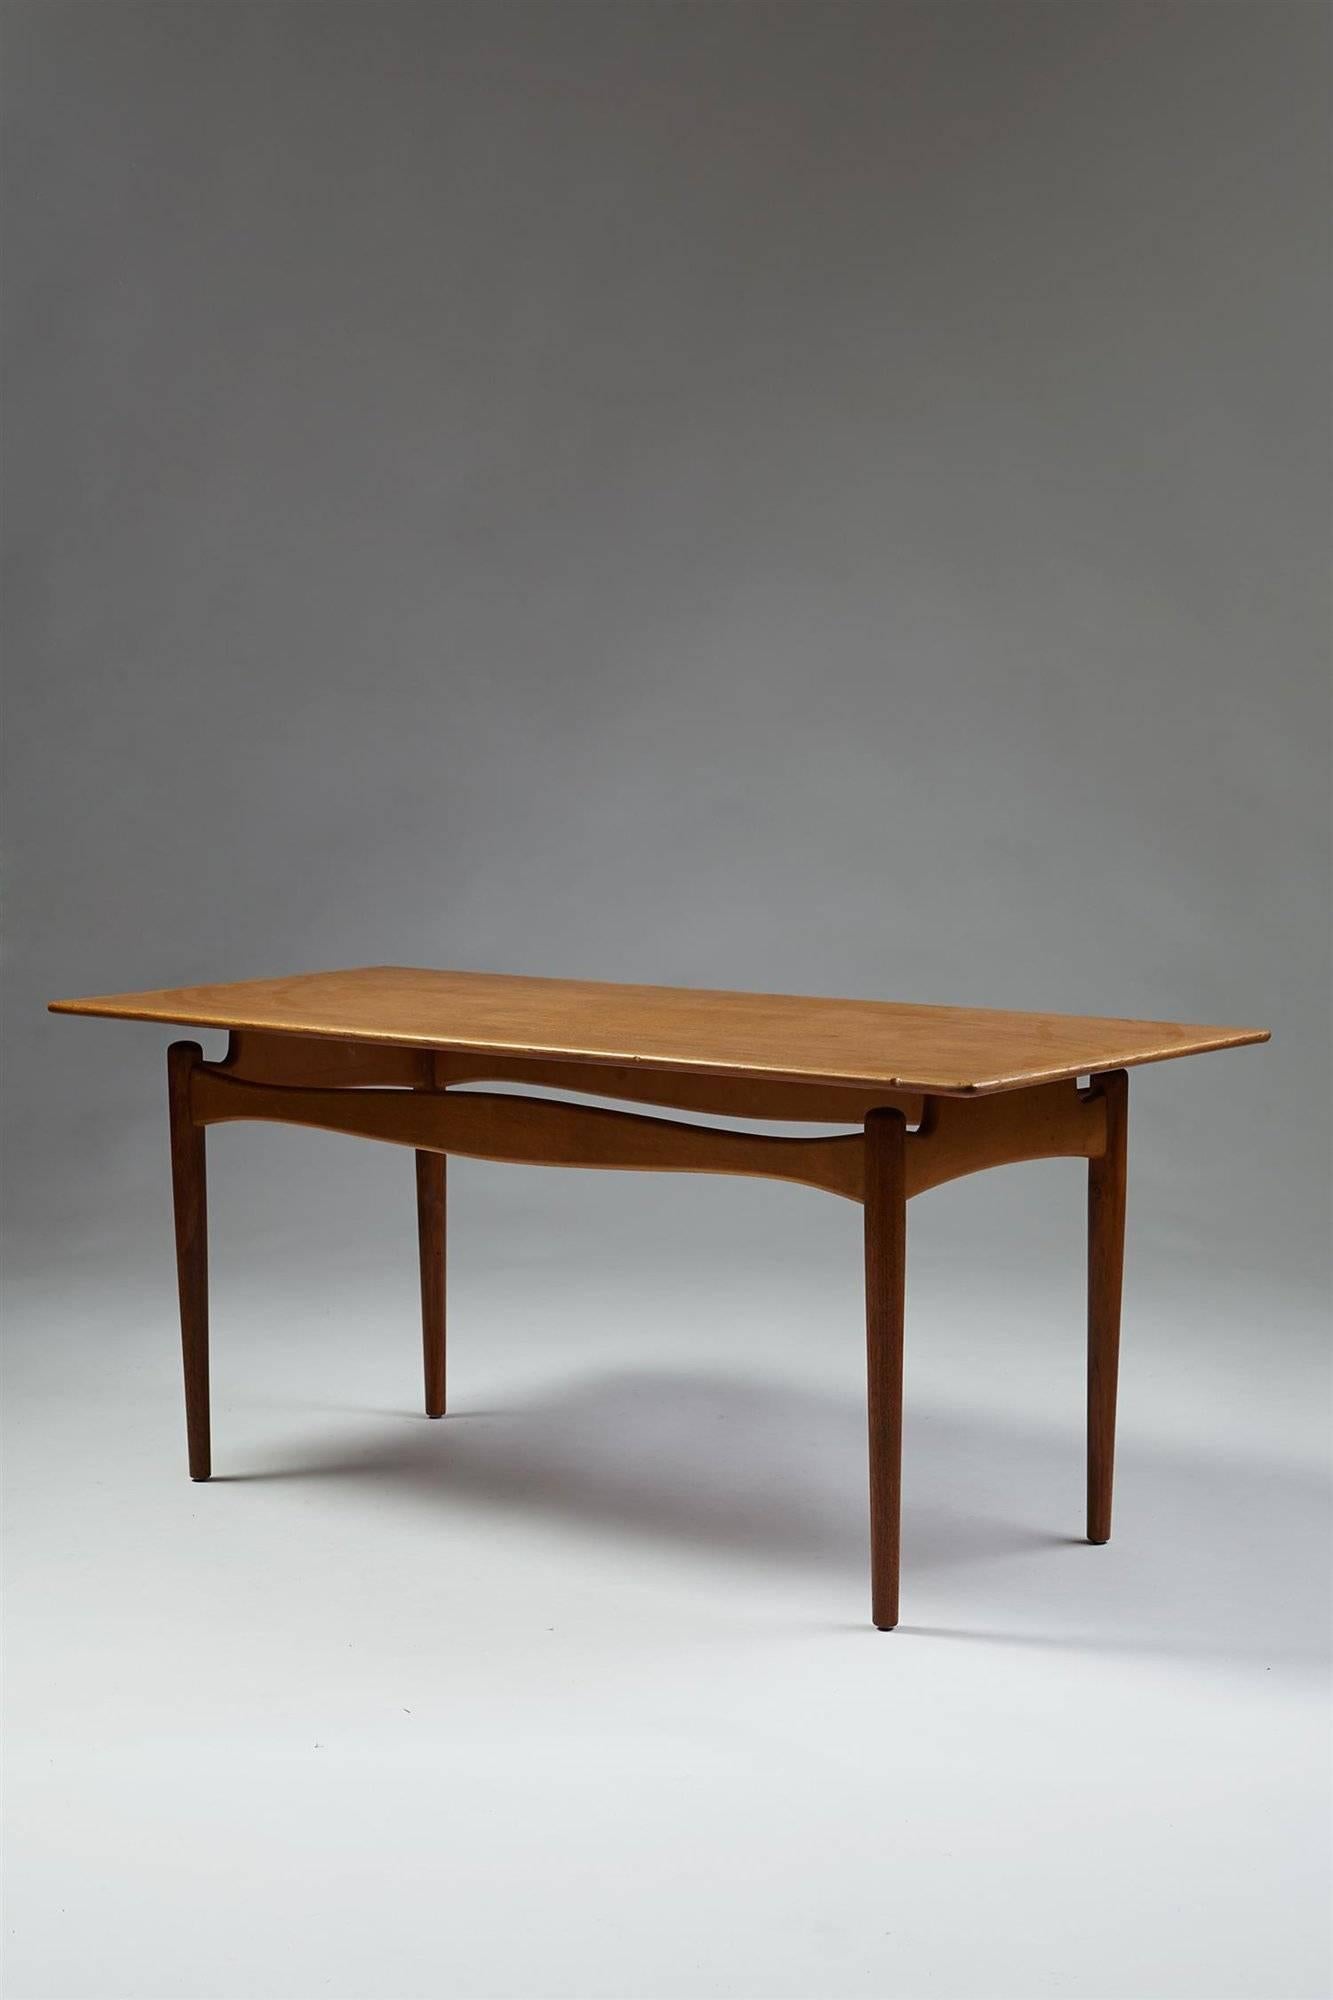 Scandinavian Modern Occasional Table Designed by Finn Juhl for Bovirke, Denmark, 1950s